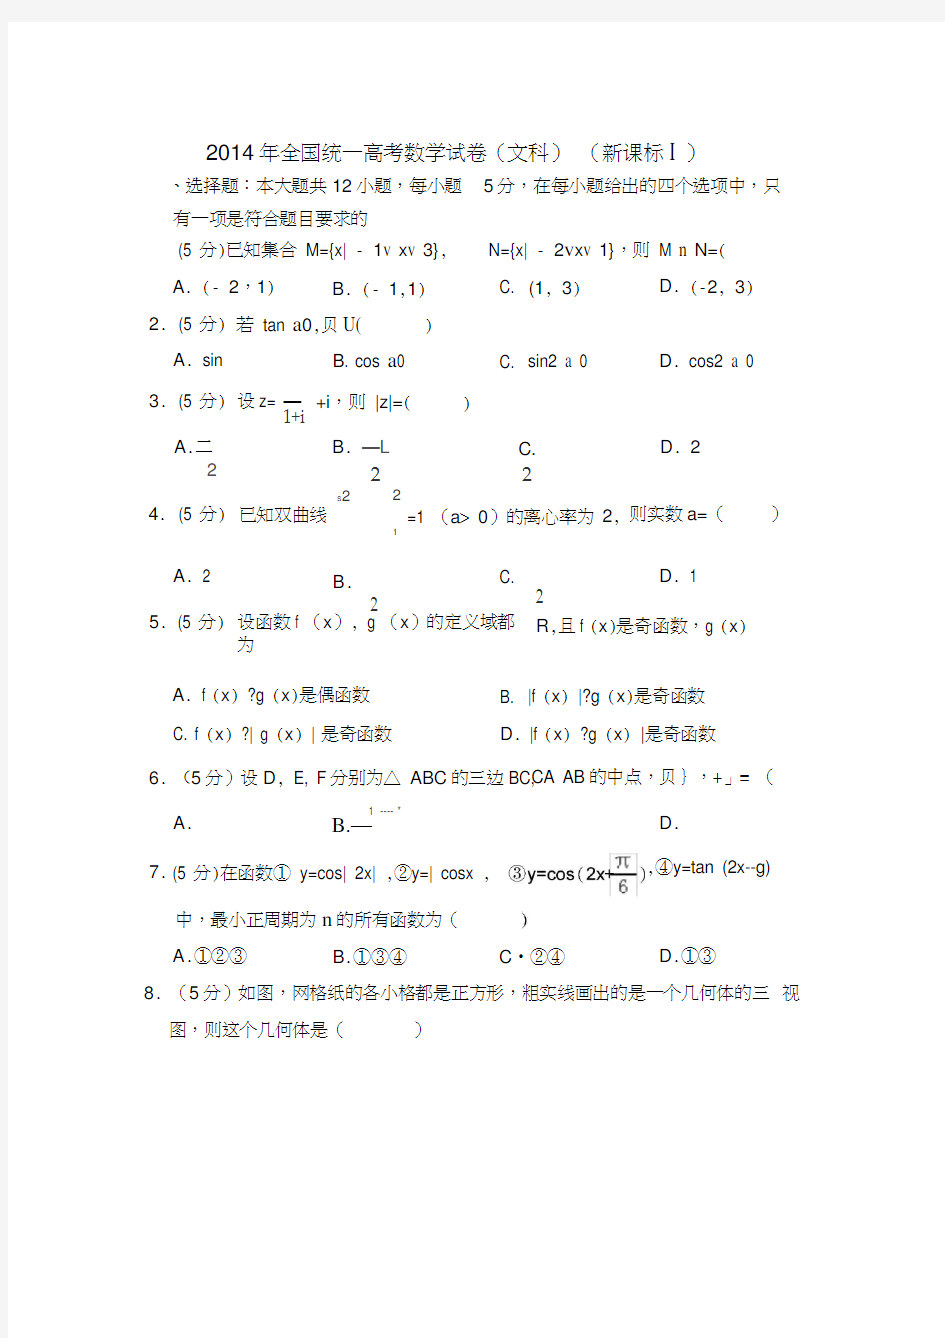 2014年全国统一高考数学试卷(文科)(全国一卷)